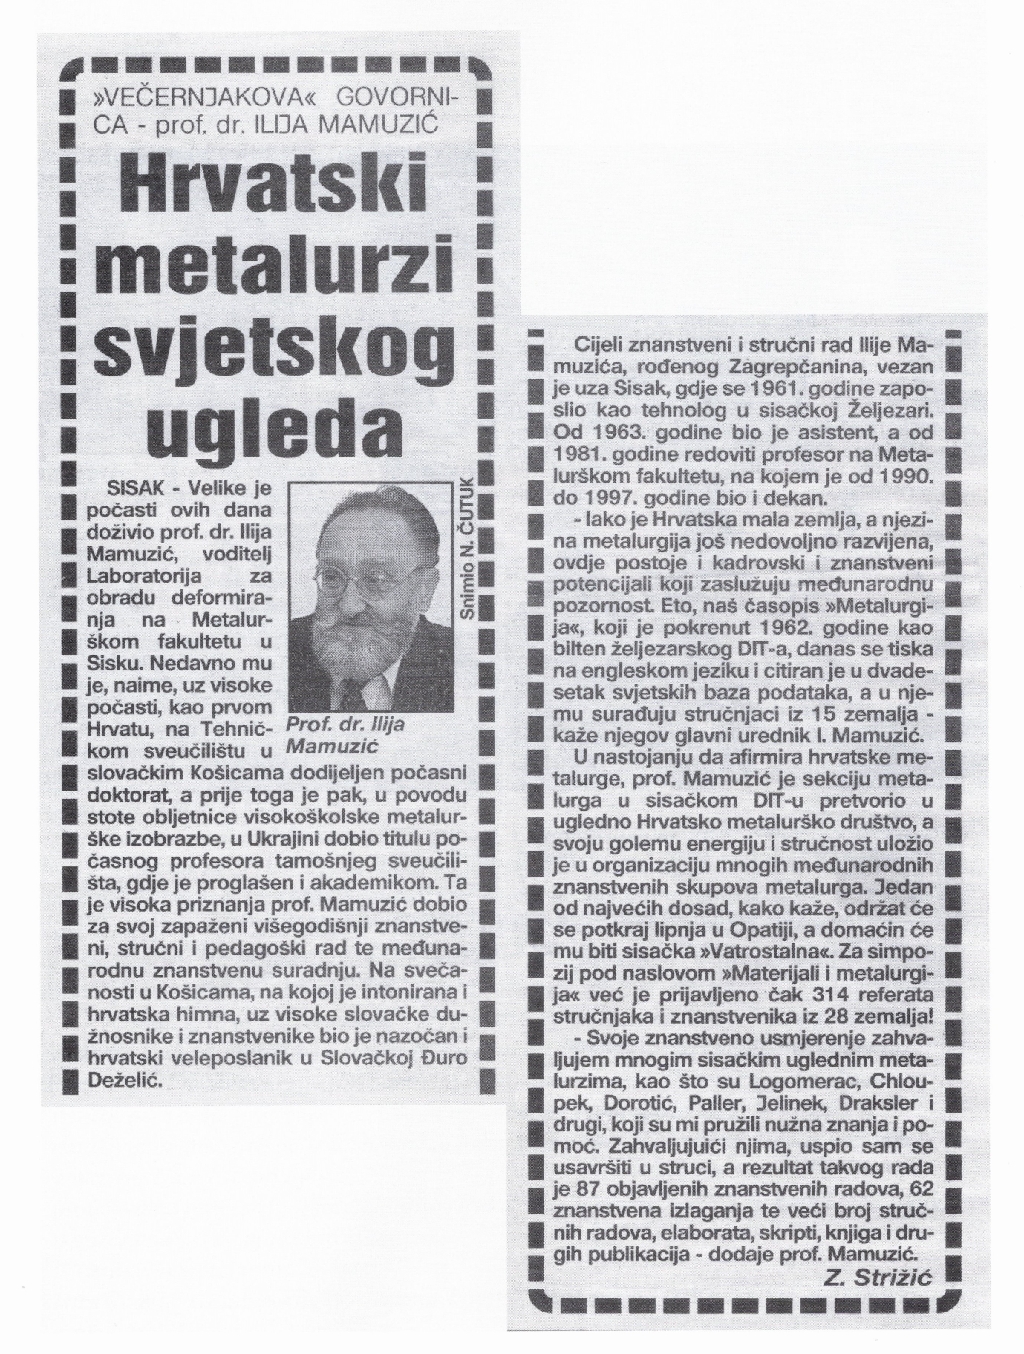 2000-Hrvatski metalurzi svjetskog ugleda